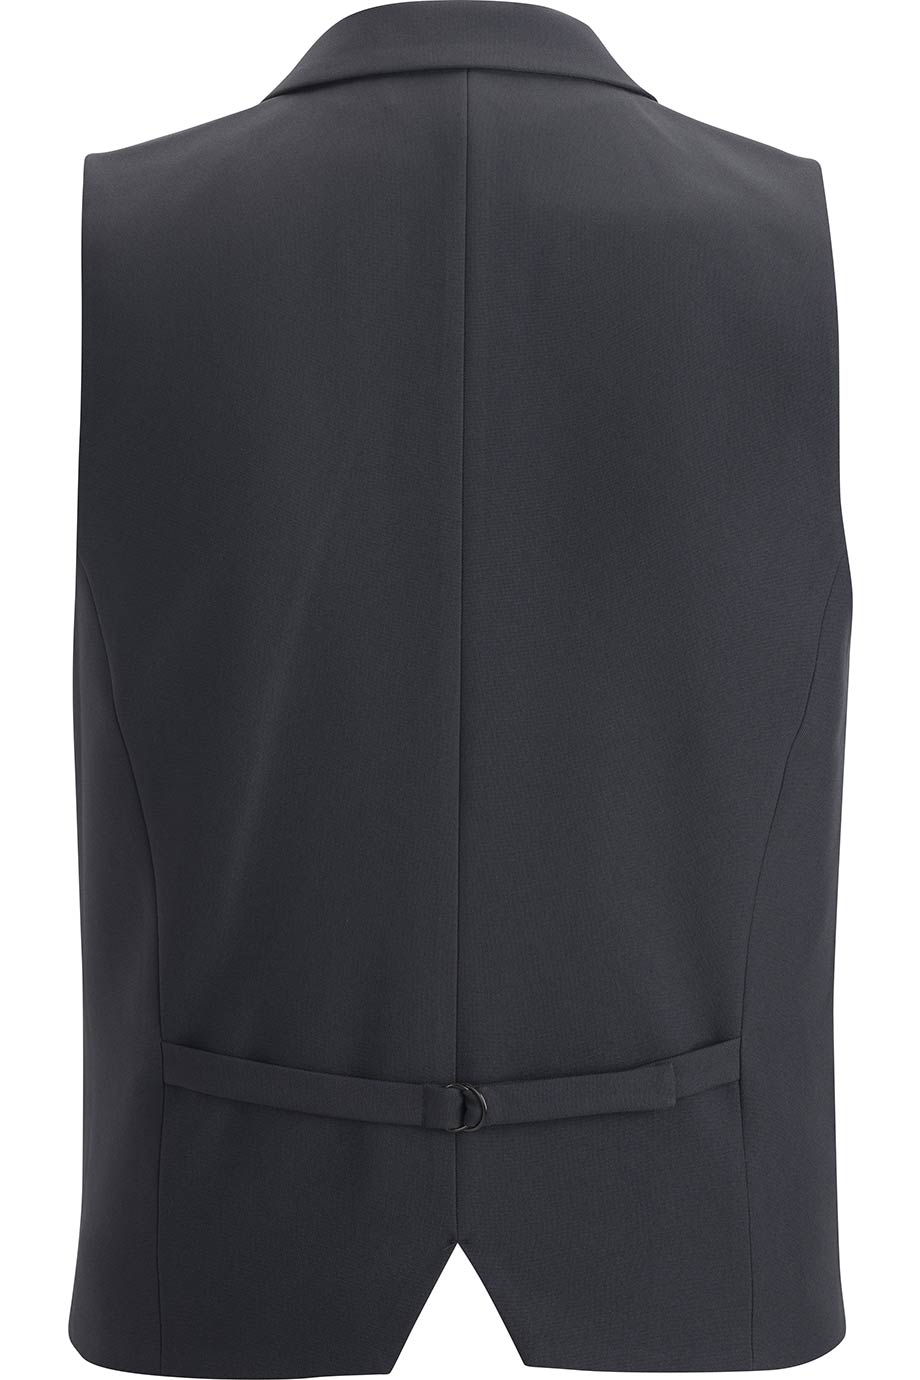 DRESS LAPEL VEST | Edwards Garment